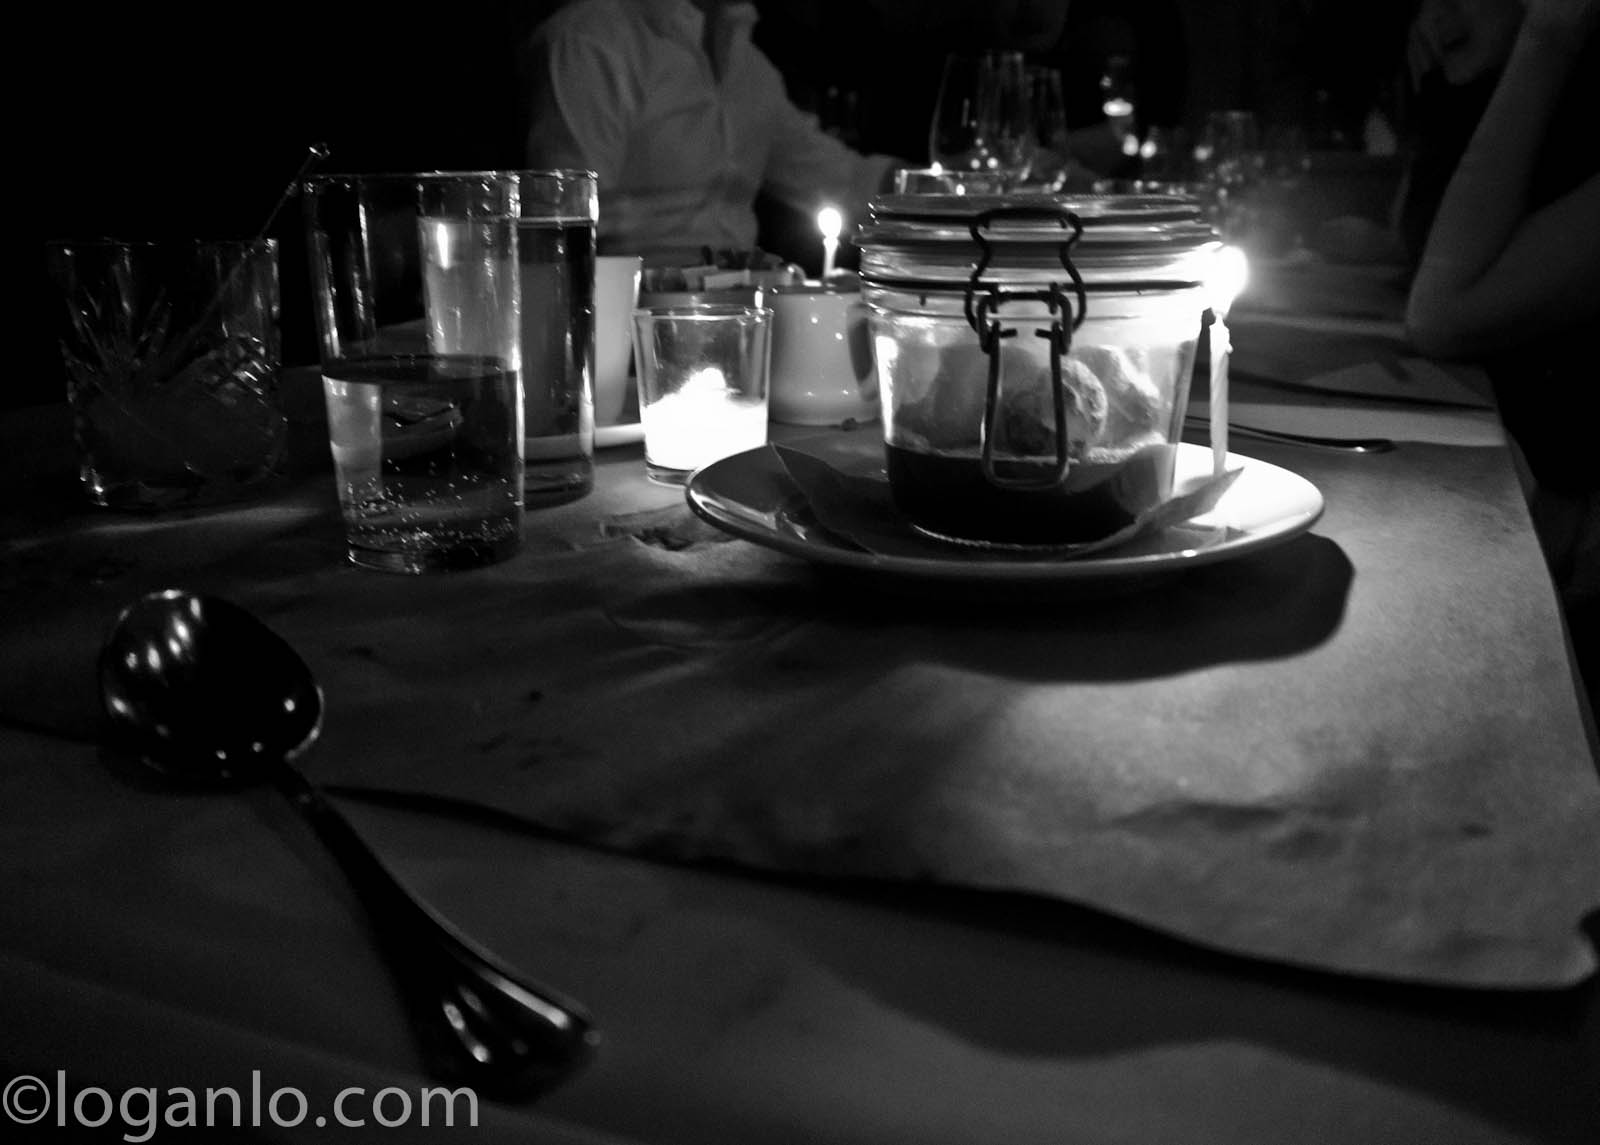 Black and white dinner setting